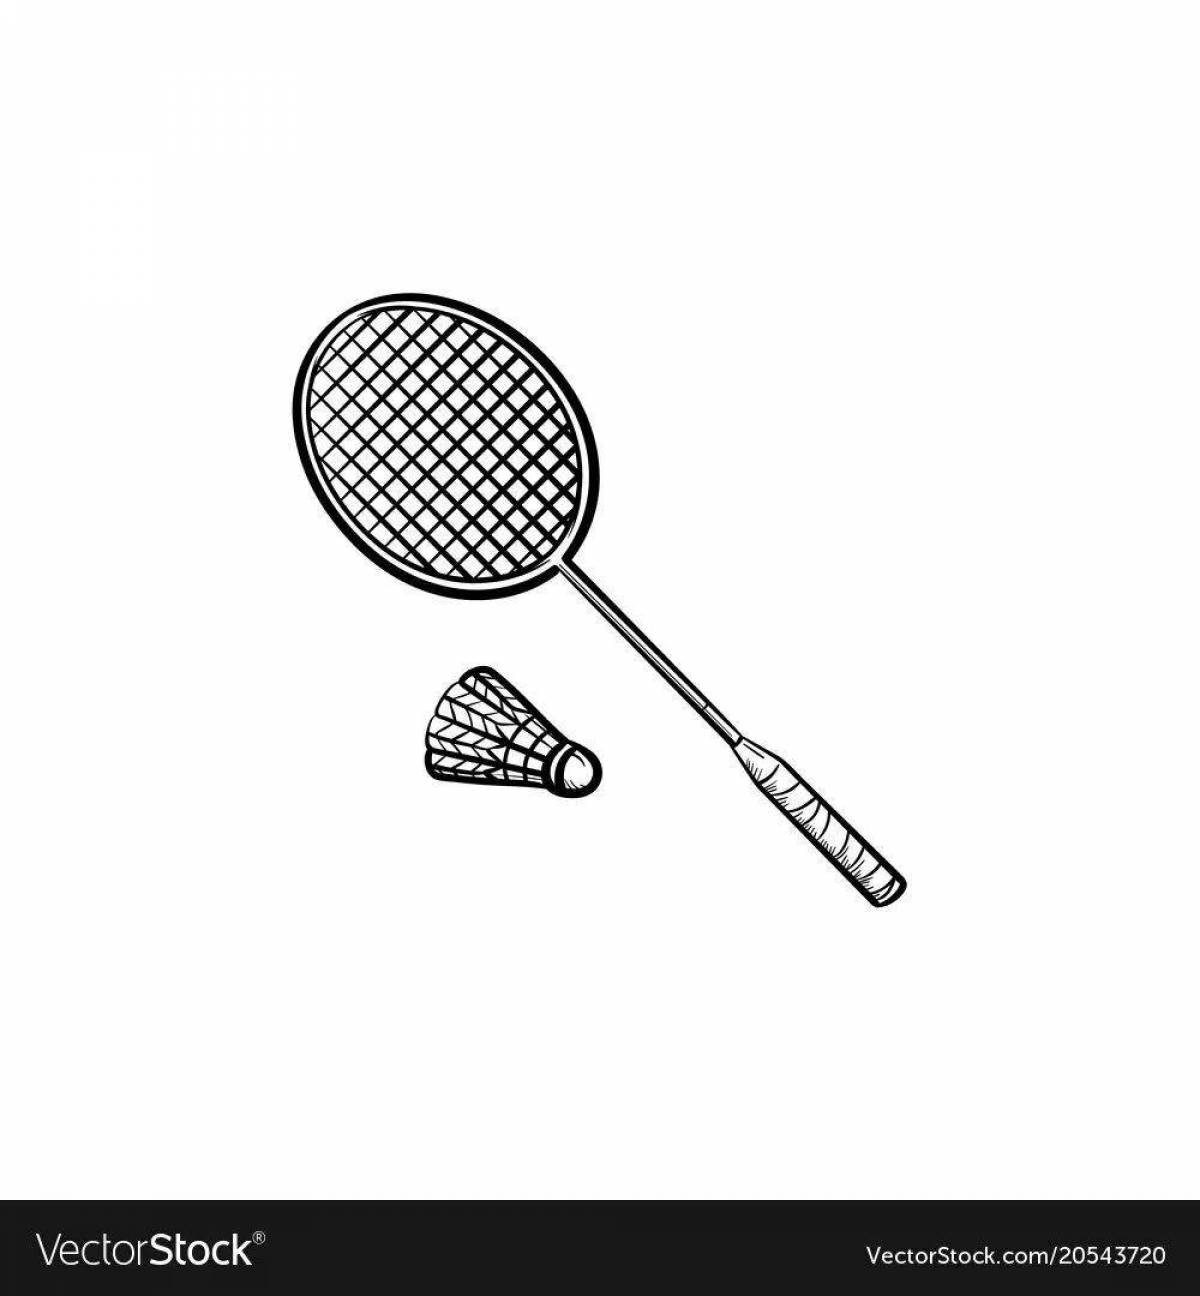 Fascinating badminton coloring book